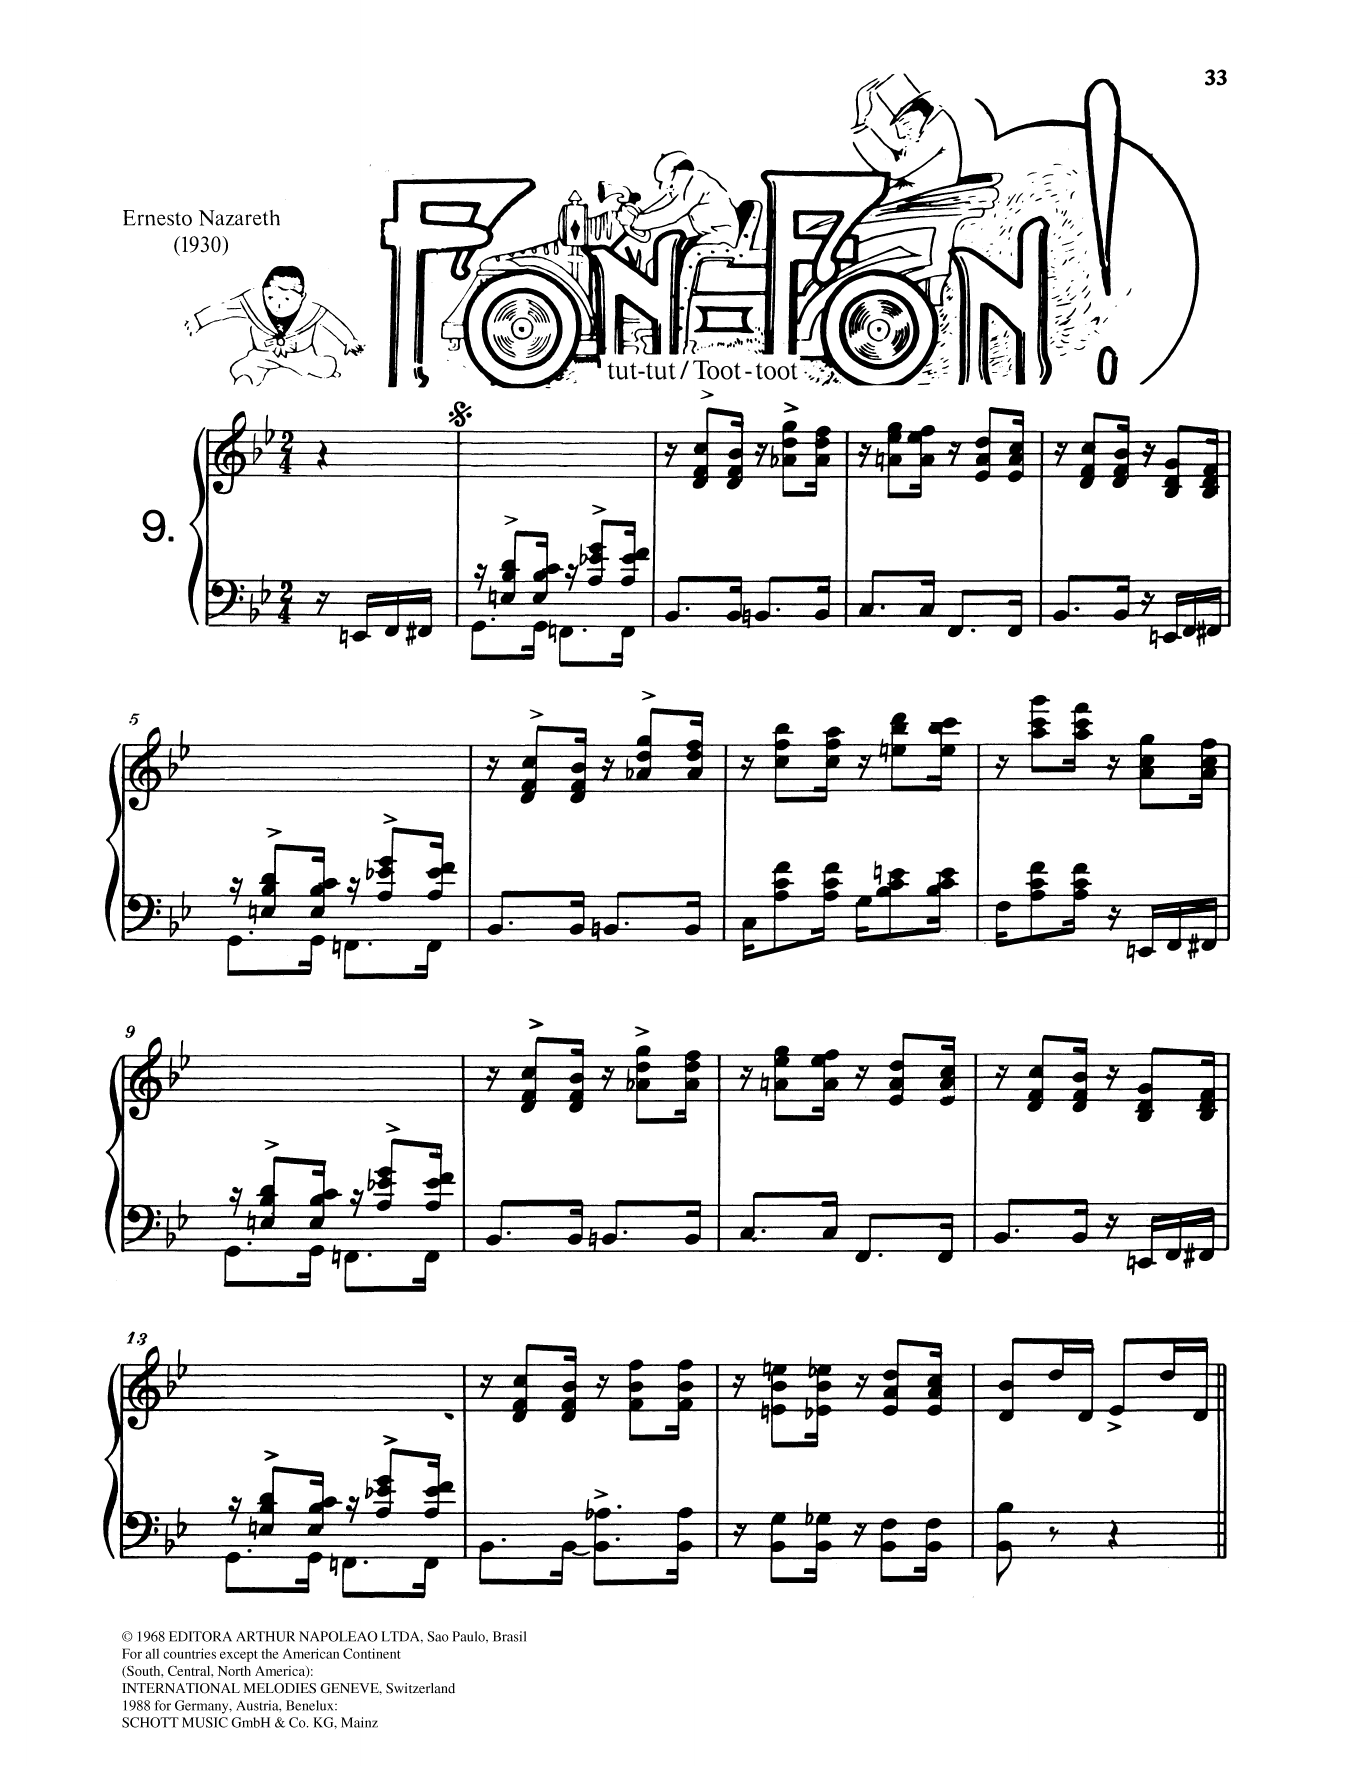 Fon-Fon sheet music